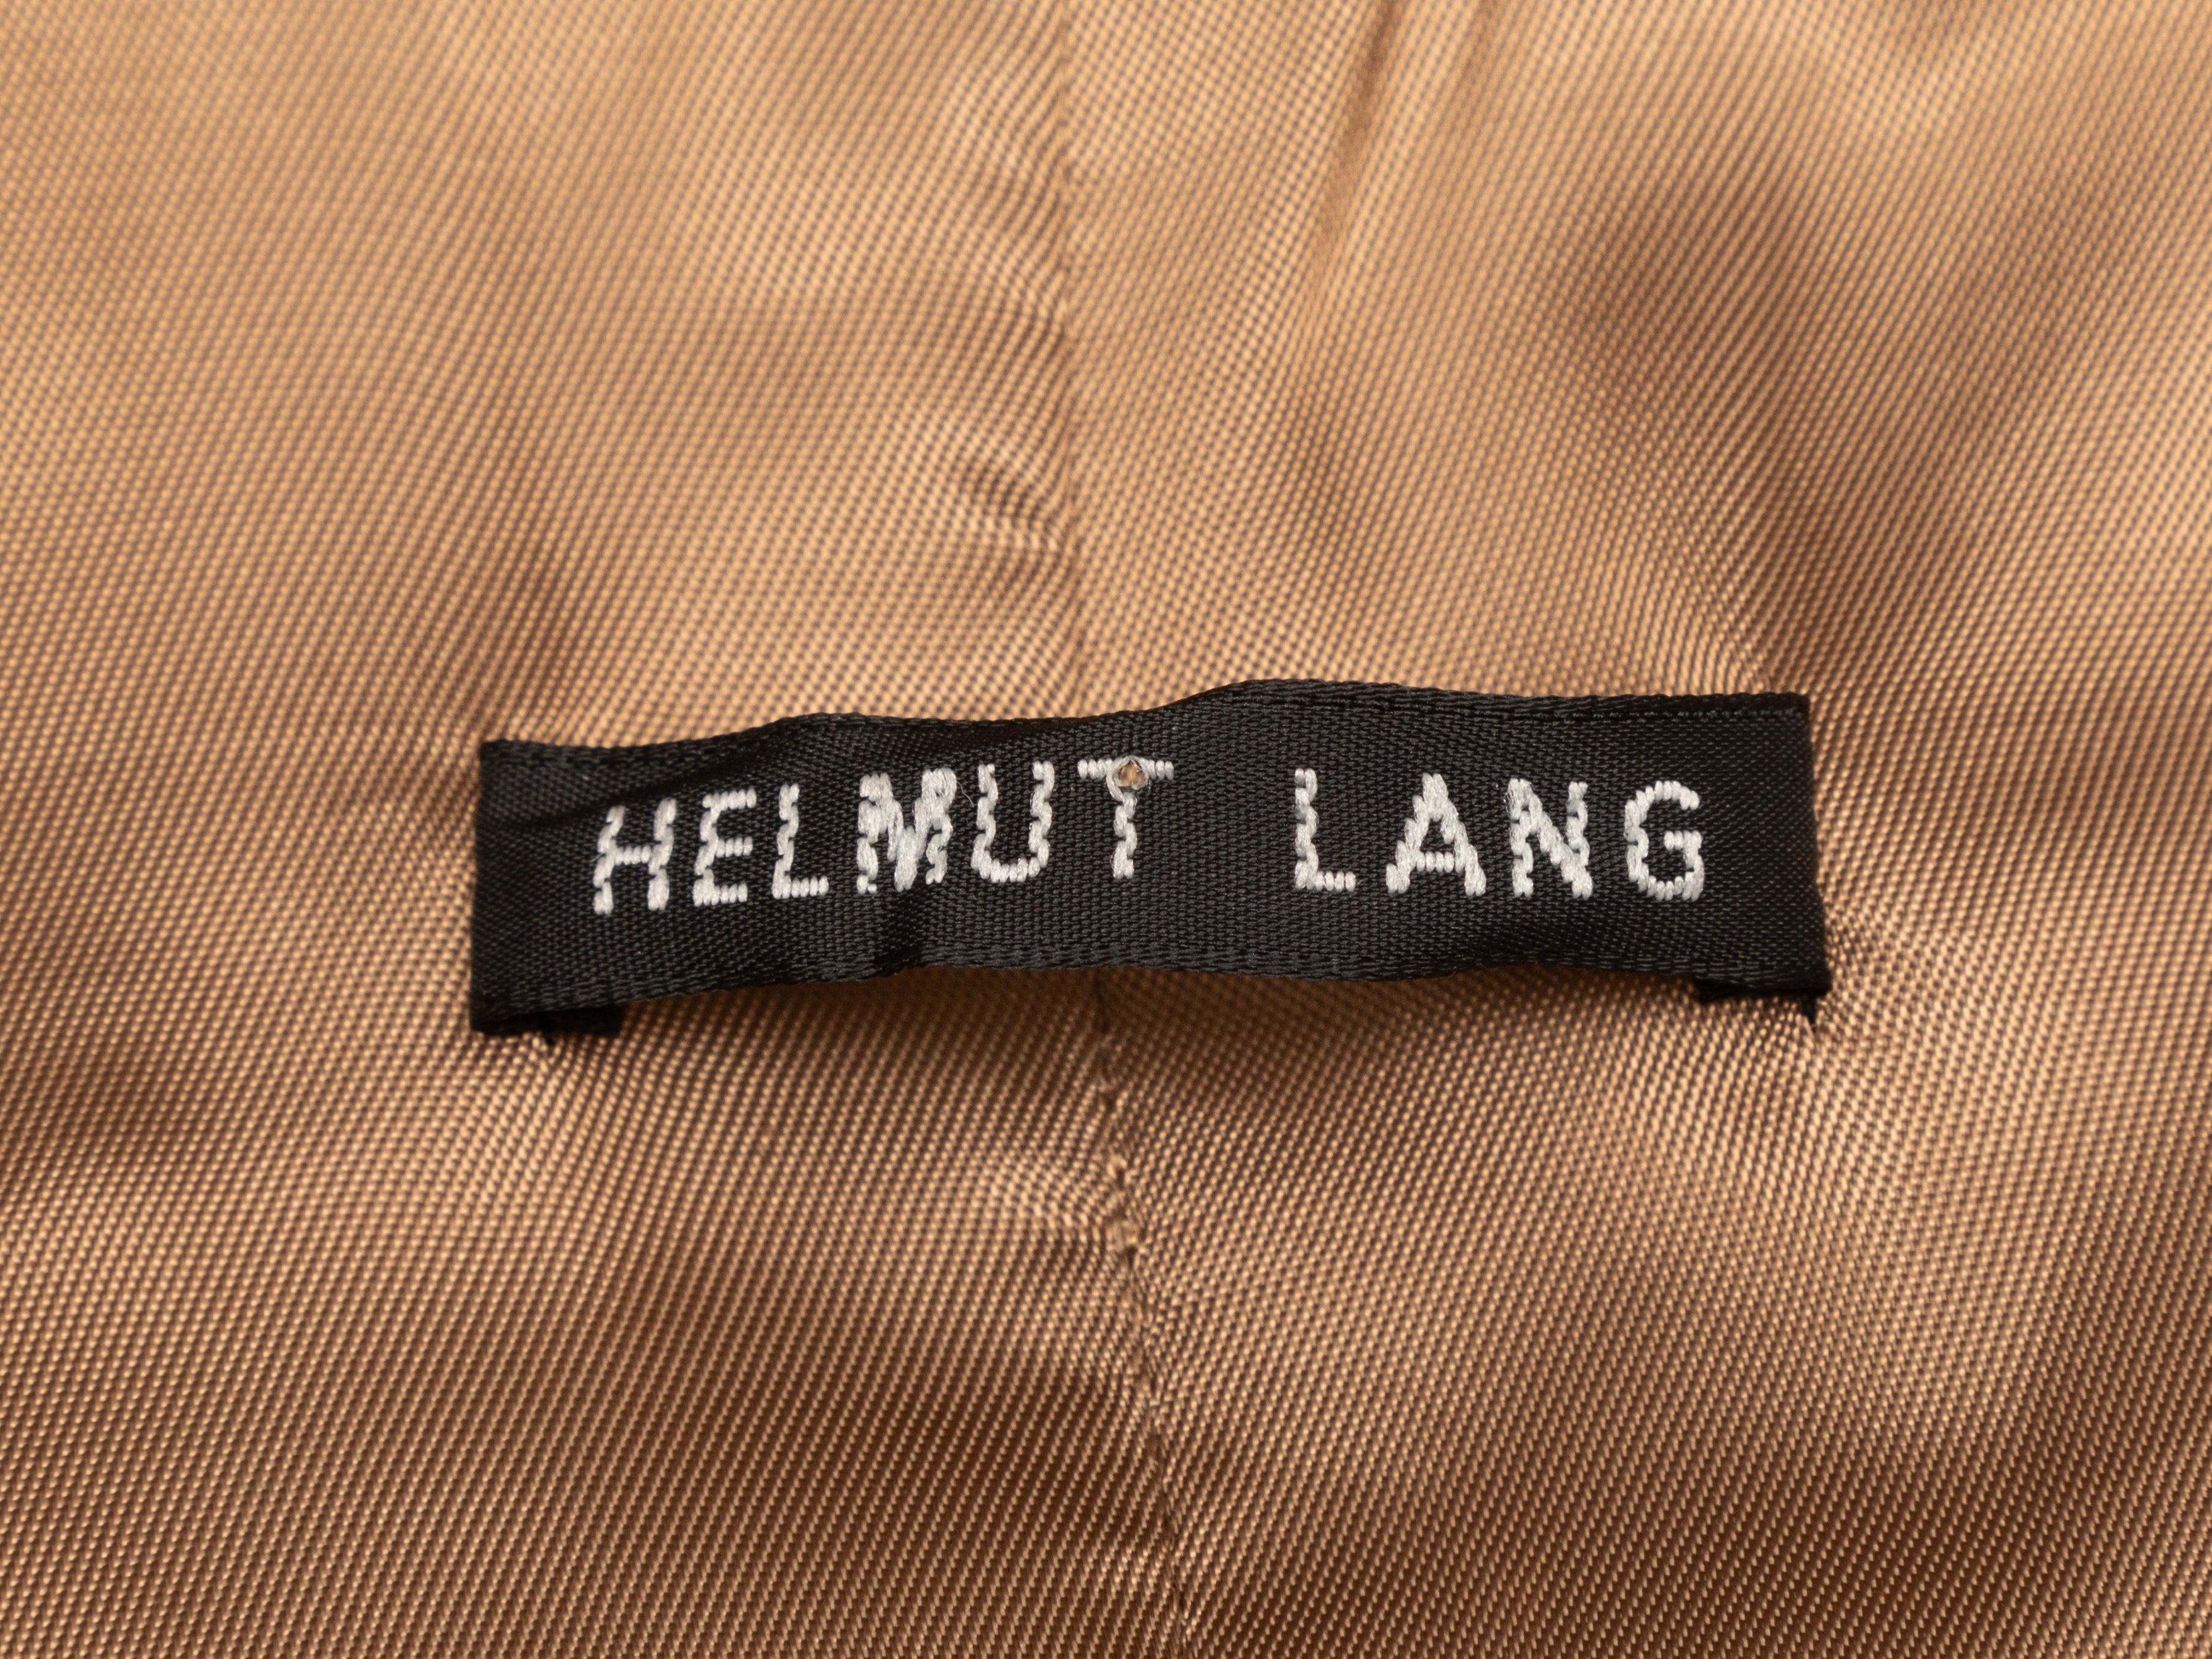 Vintage Tan Helmut Lang Fall/Winter 2000 Leather Coat Size EU 44 - Designer Revival